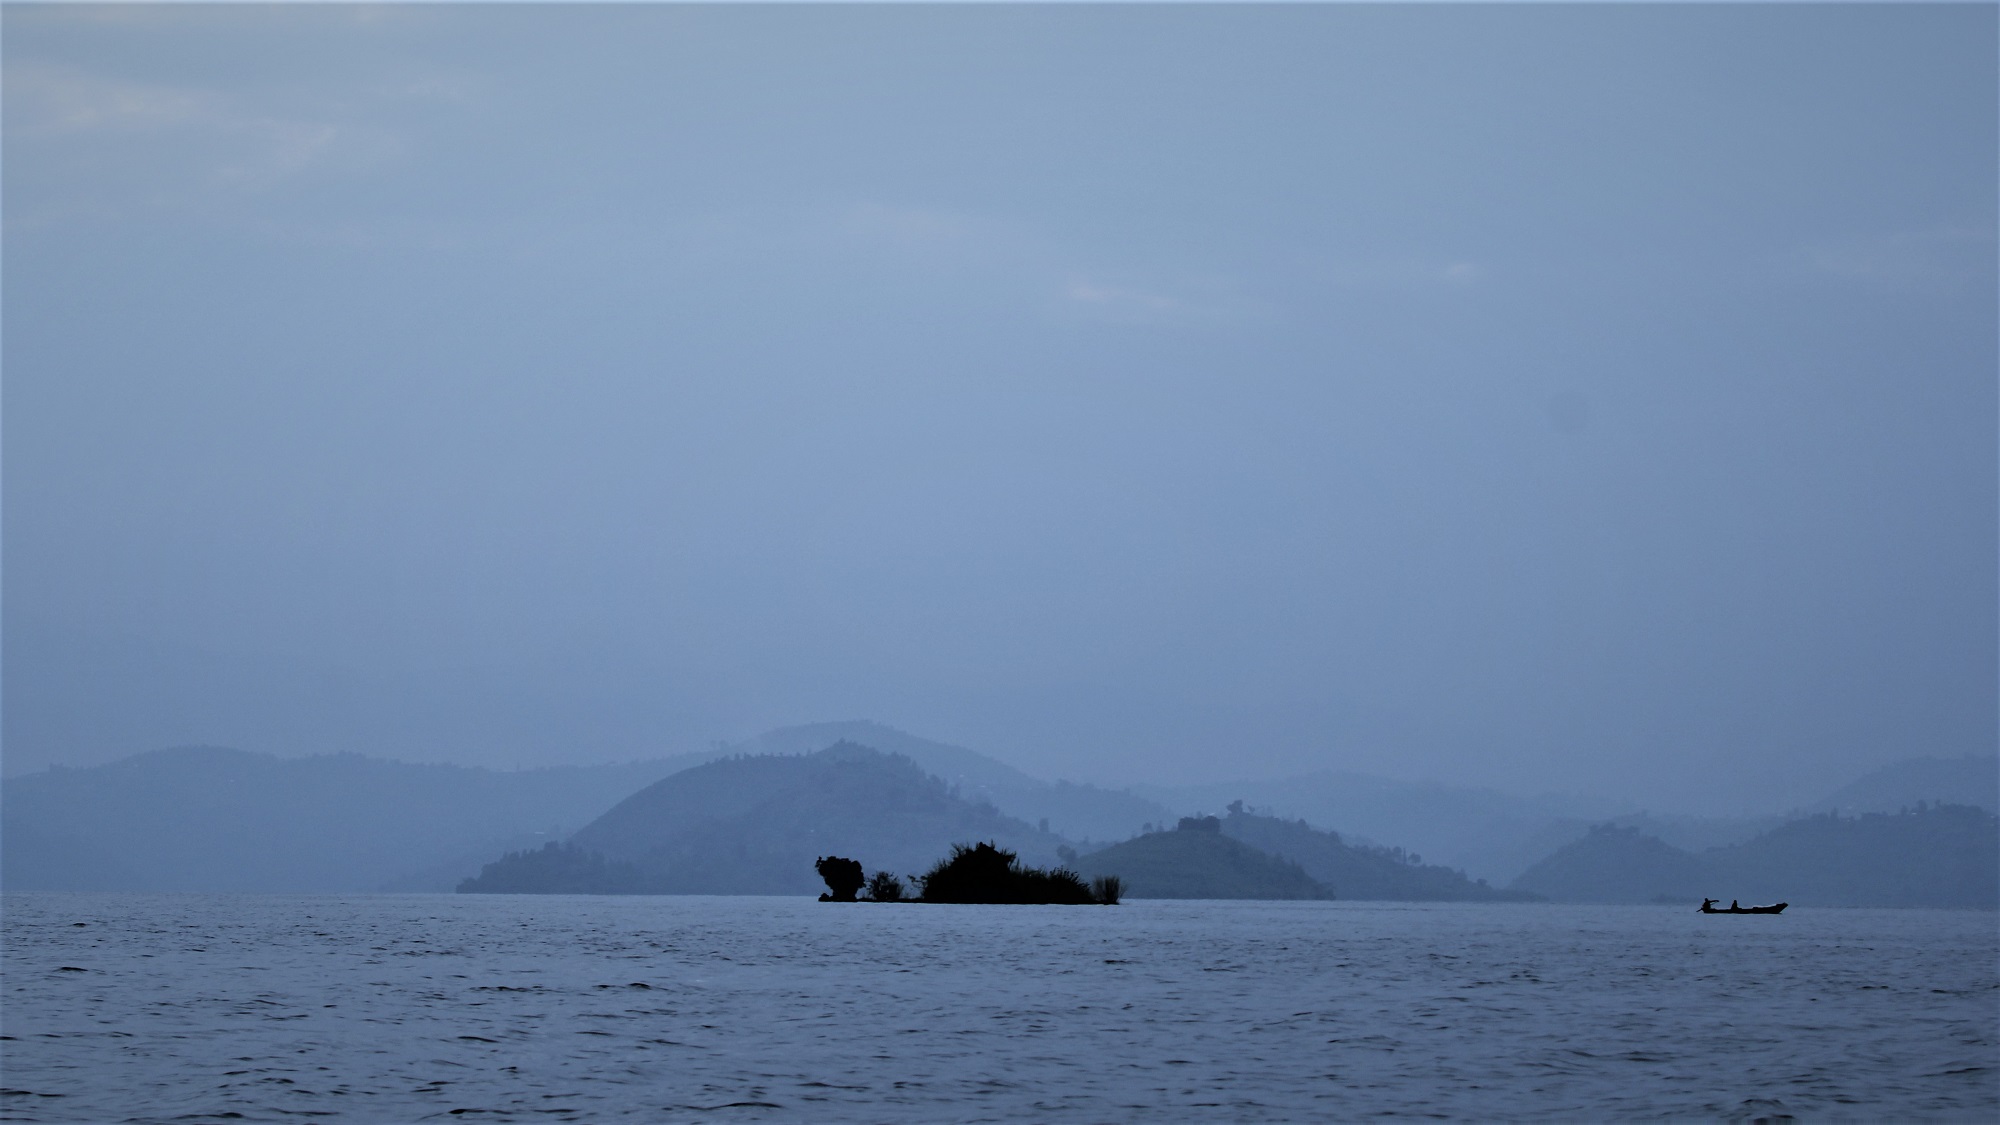 A photo taken when visiting Lake Kivu